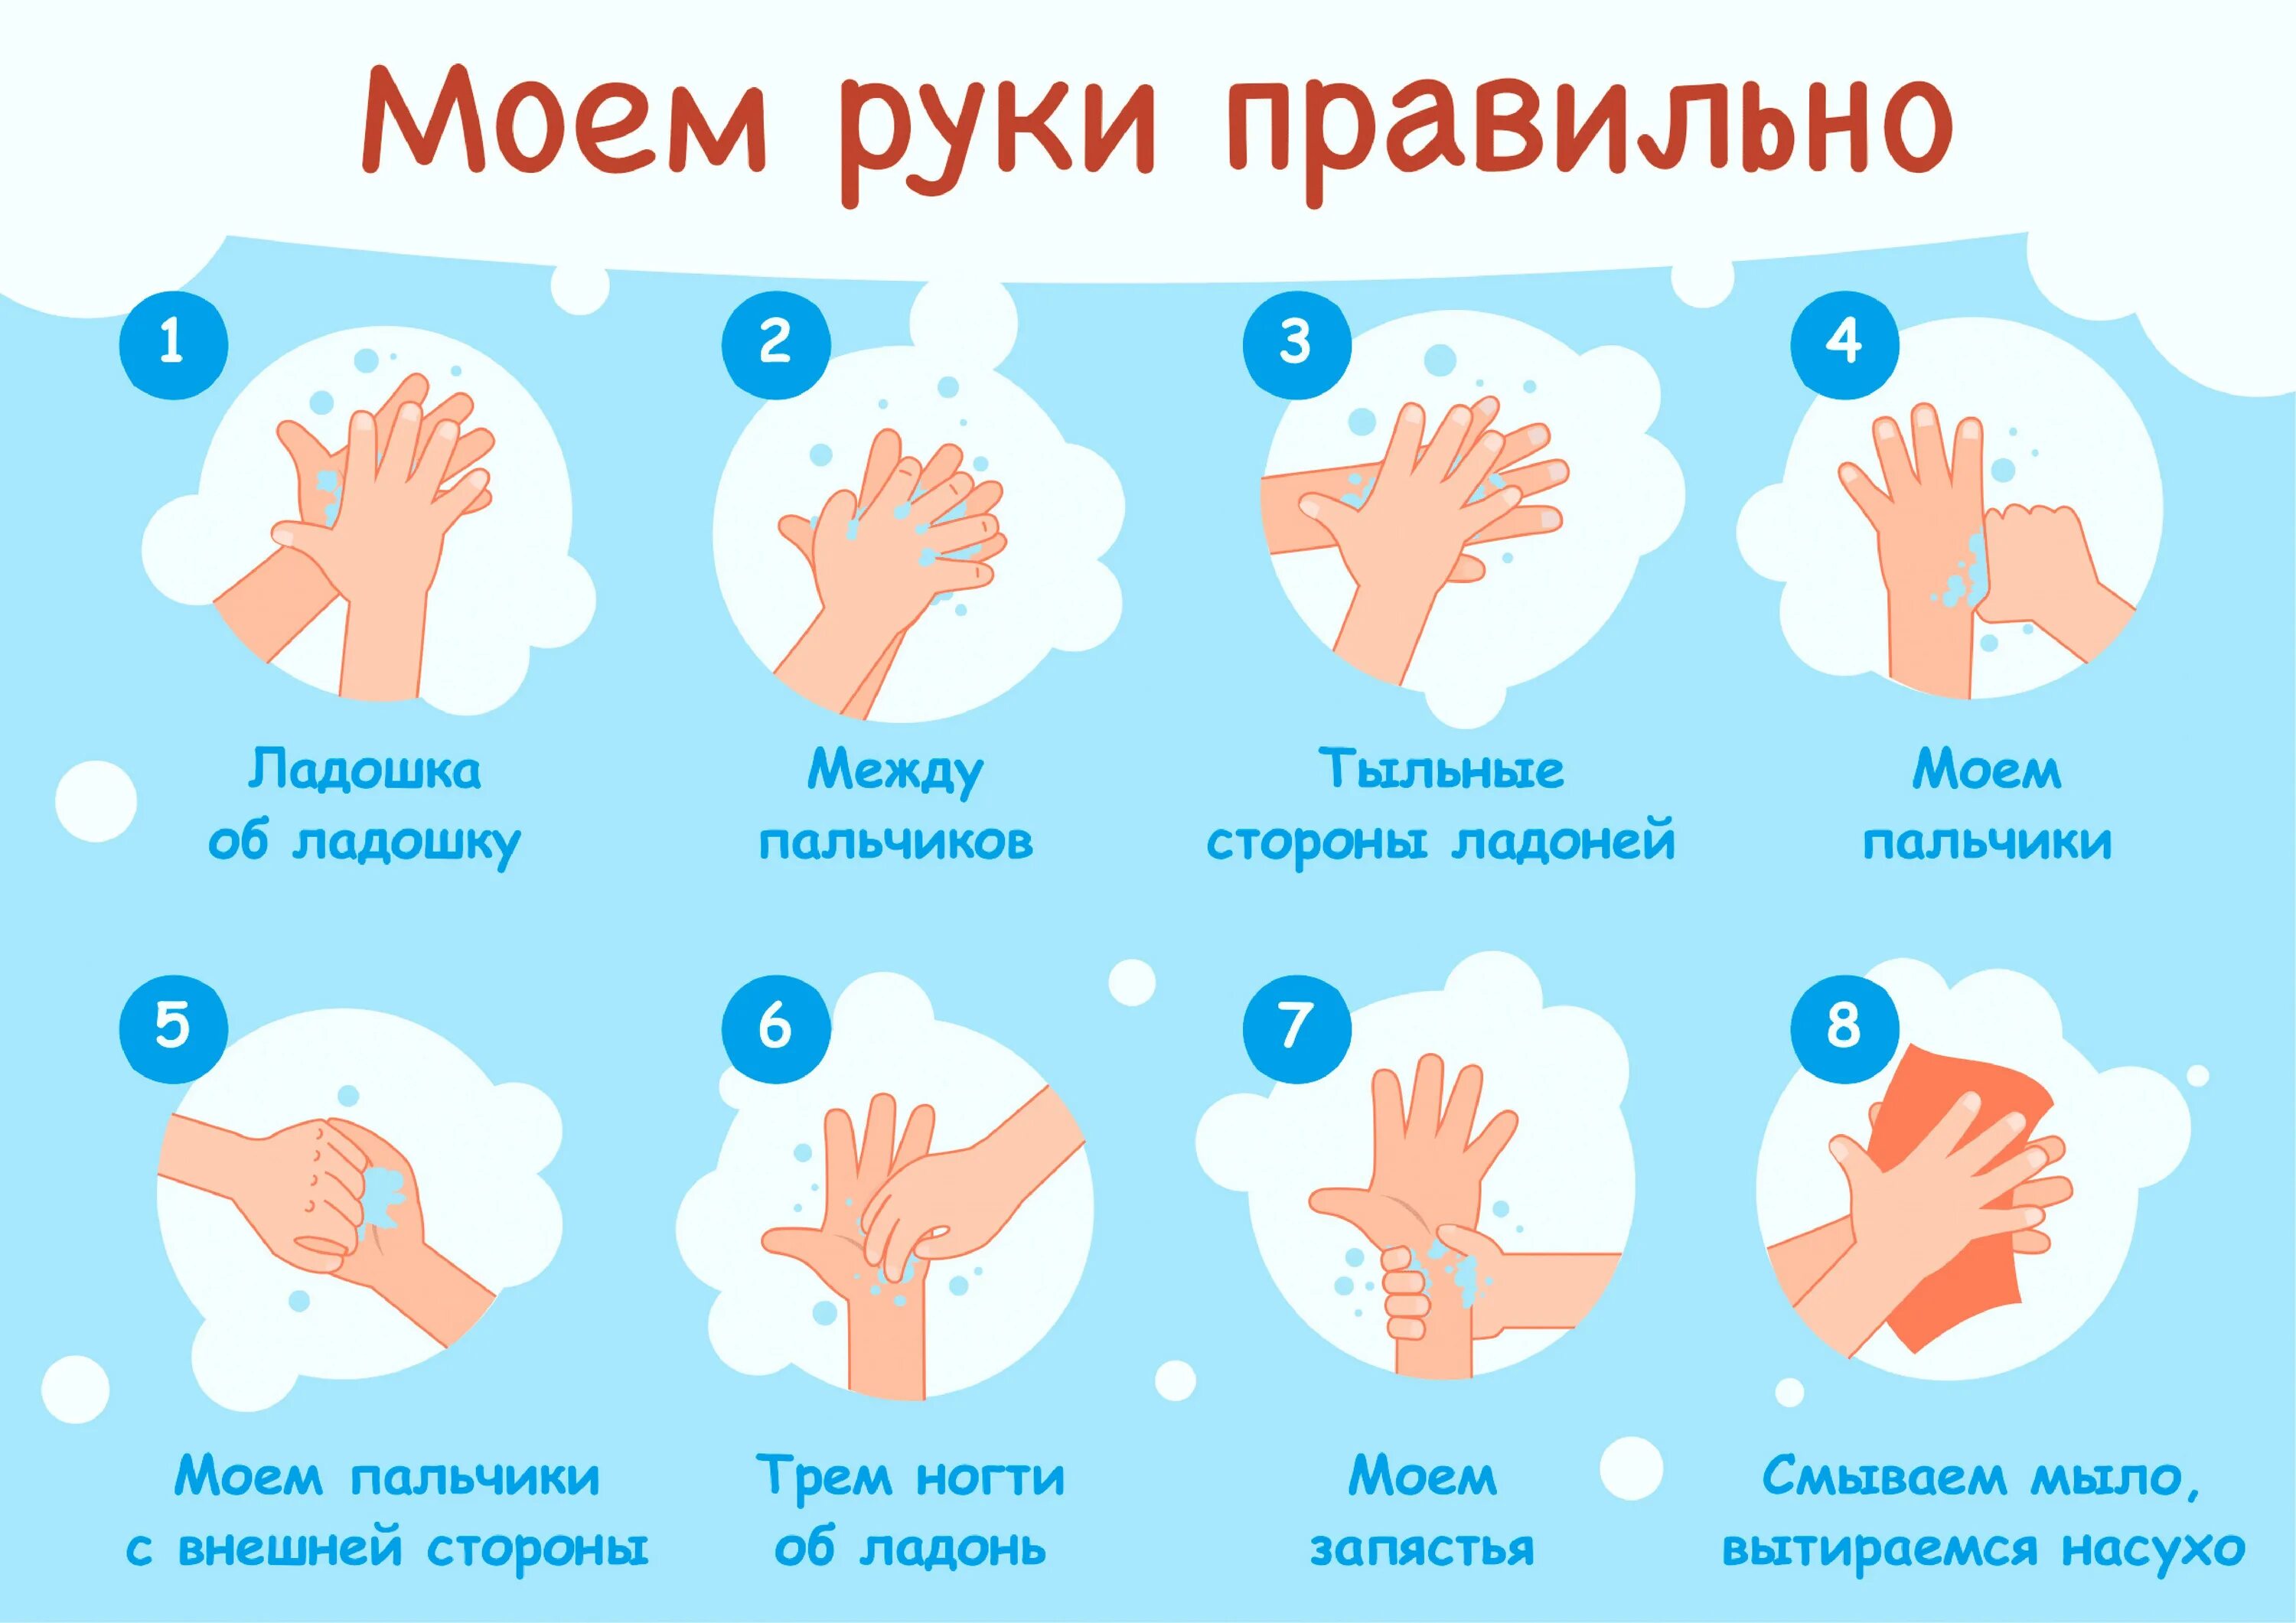 Мытьё рук. Алгоритм мытья рук. Как правильн Оымт ьруки. КККМ правильн омыть руки. Мытье рук дошкольников. Руки мыть руки ы